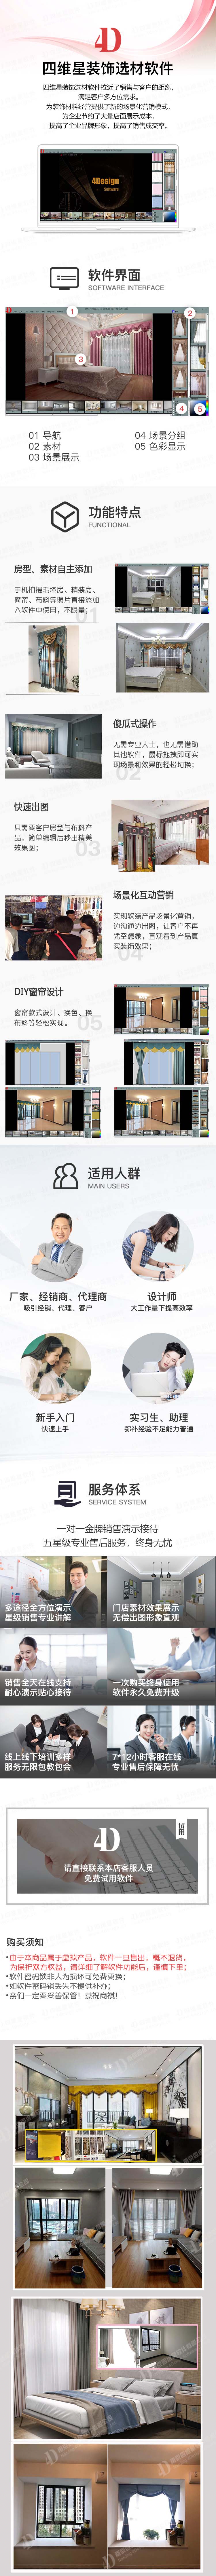 南京四维星门窗销售软件 门窗效果图展示软件